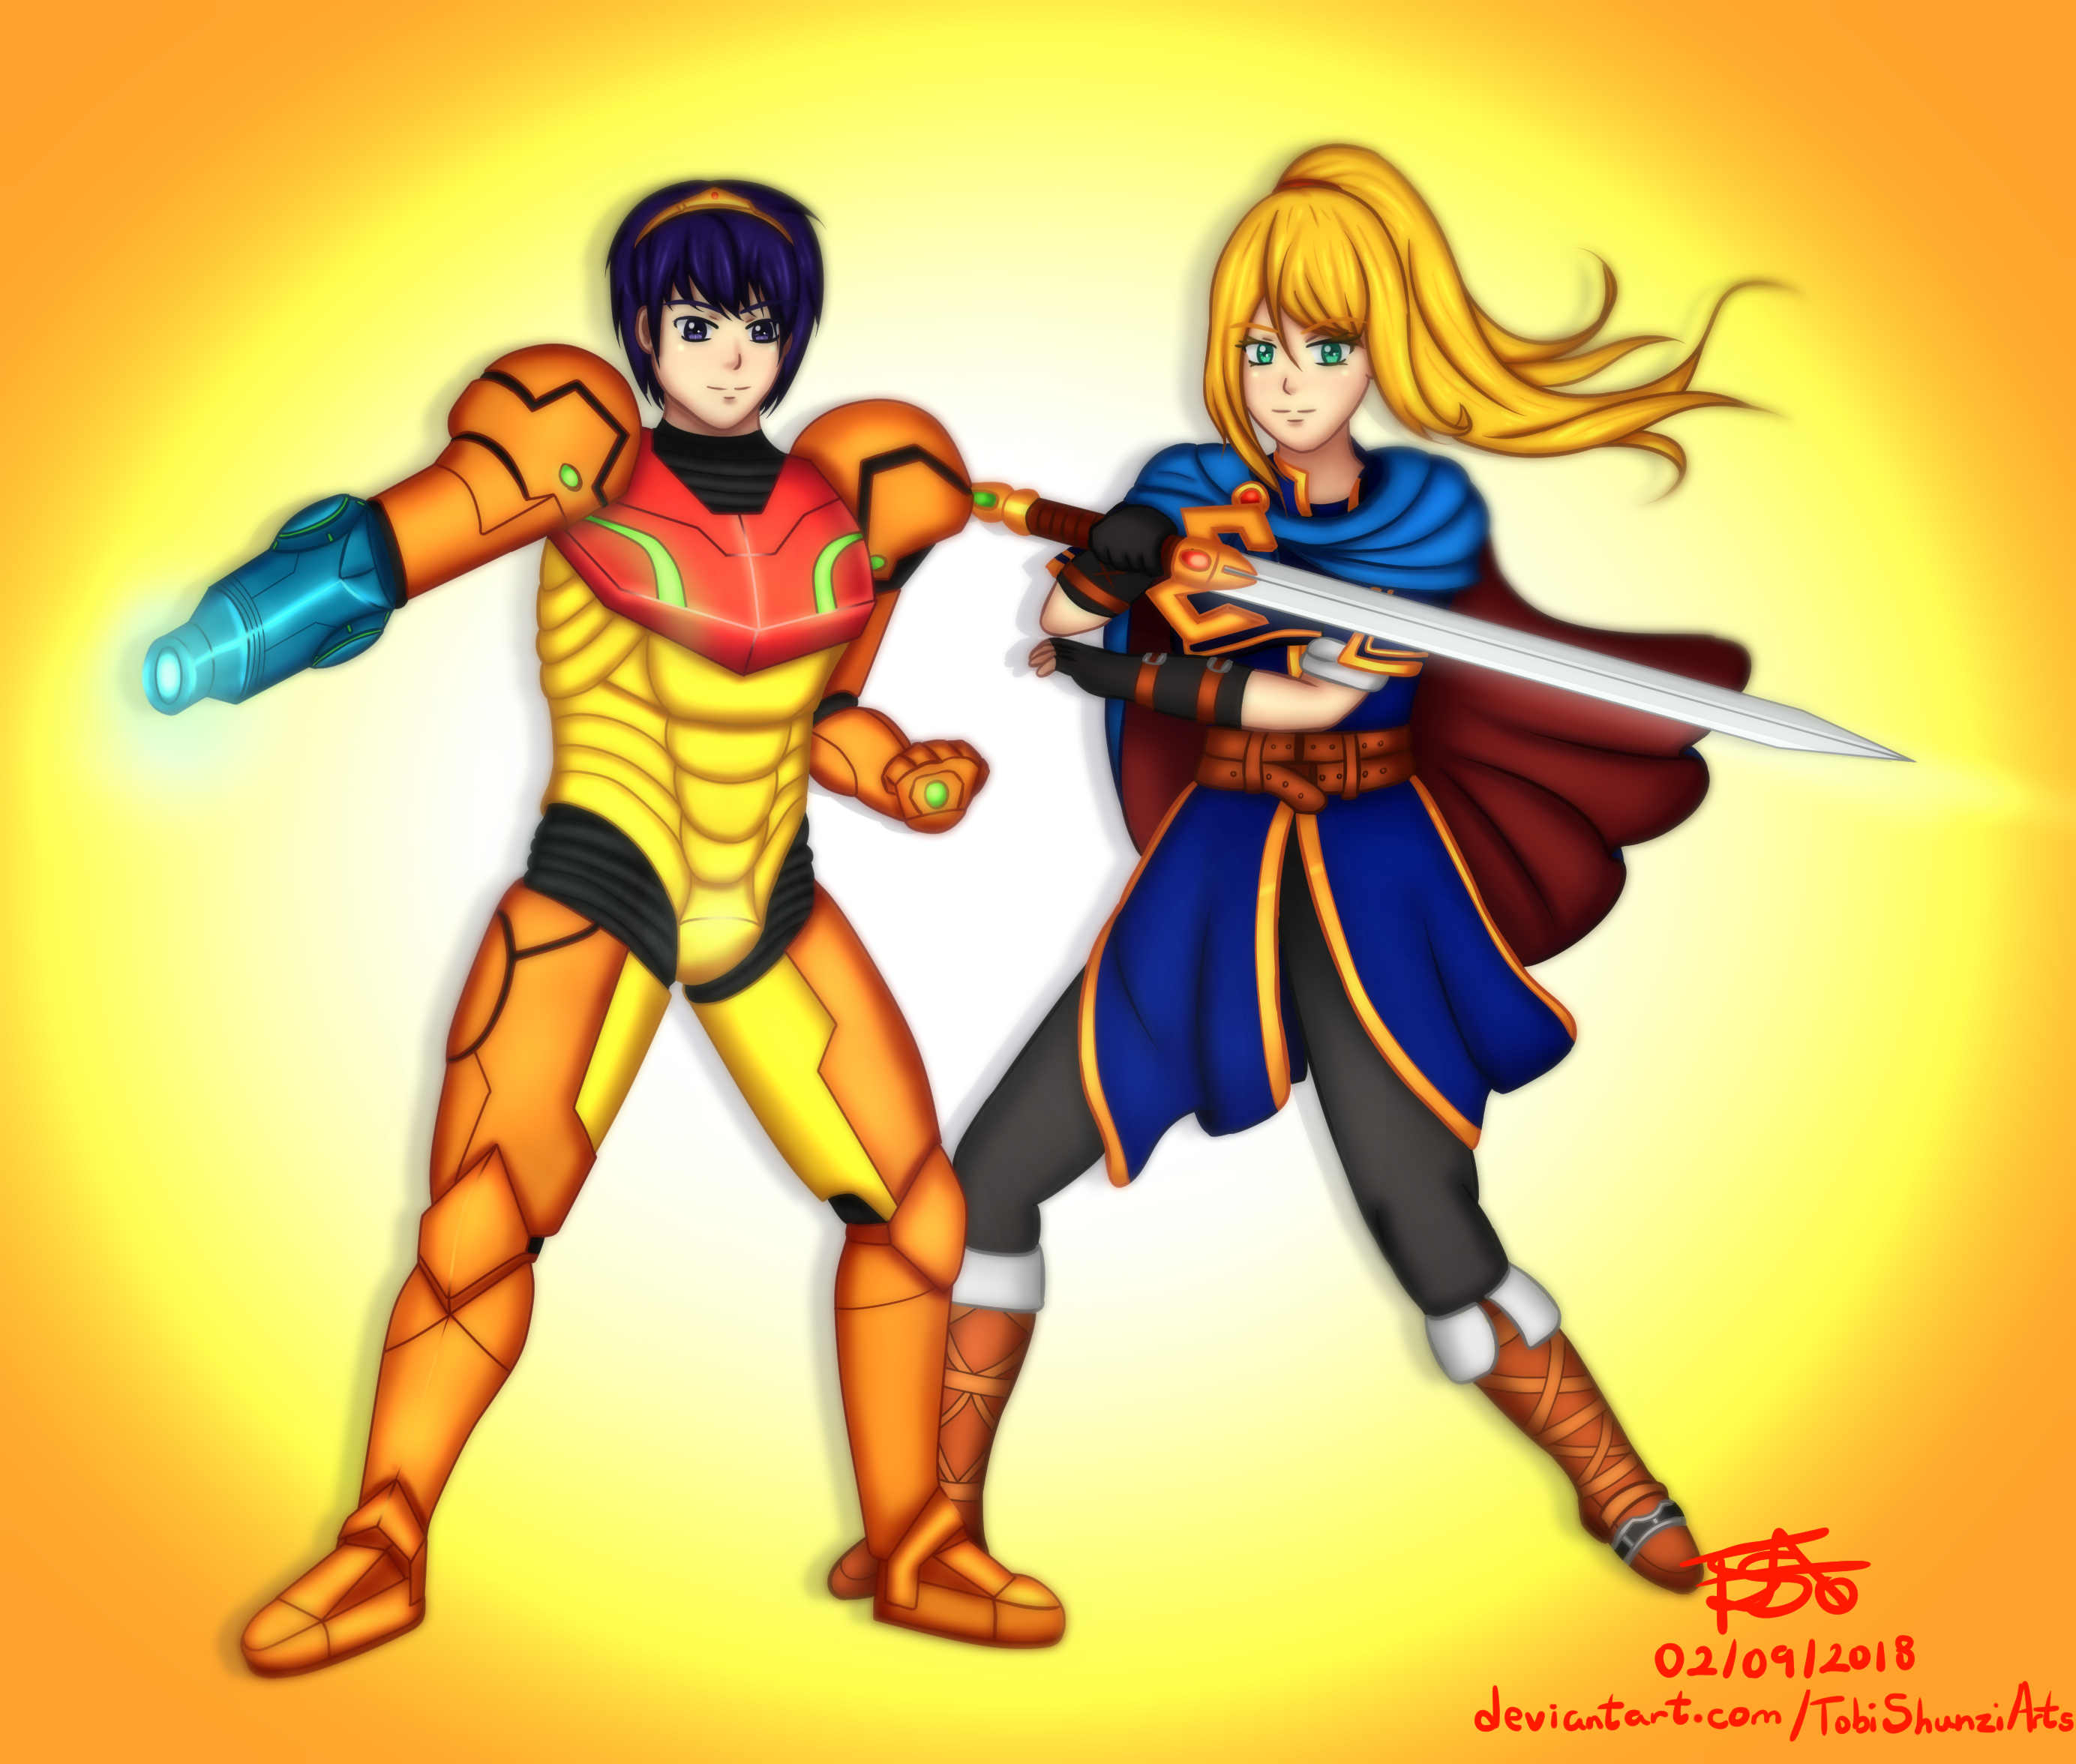 Crunchyroll X Funimation by TobiShunziArts on DeviantArt